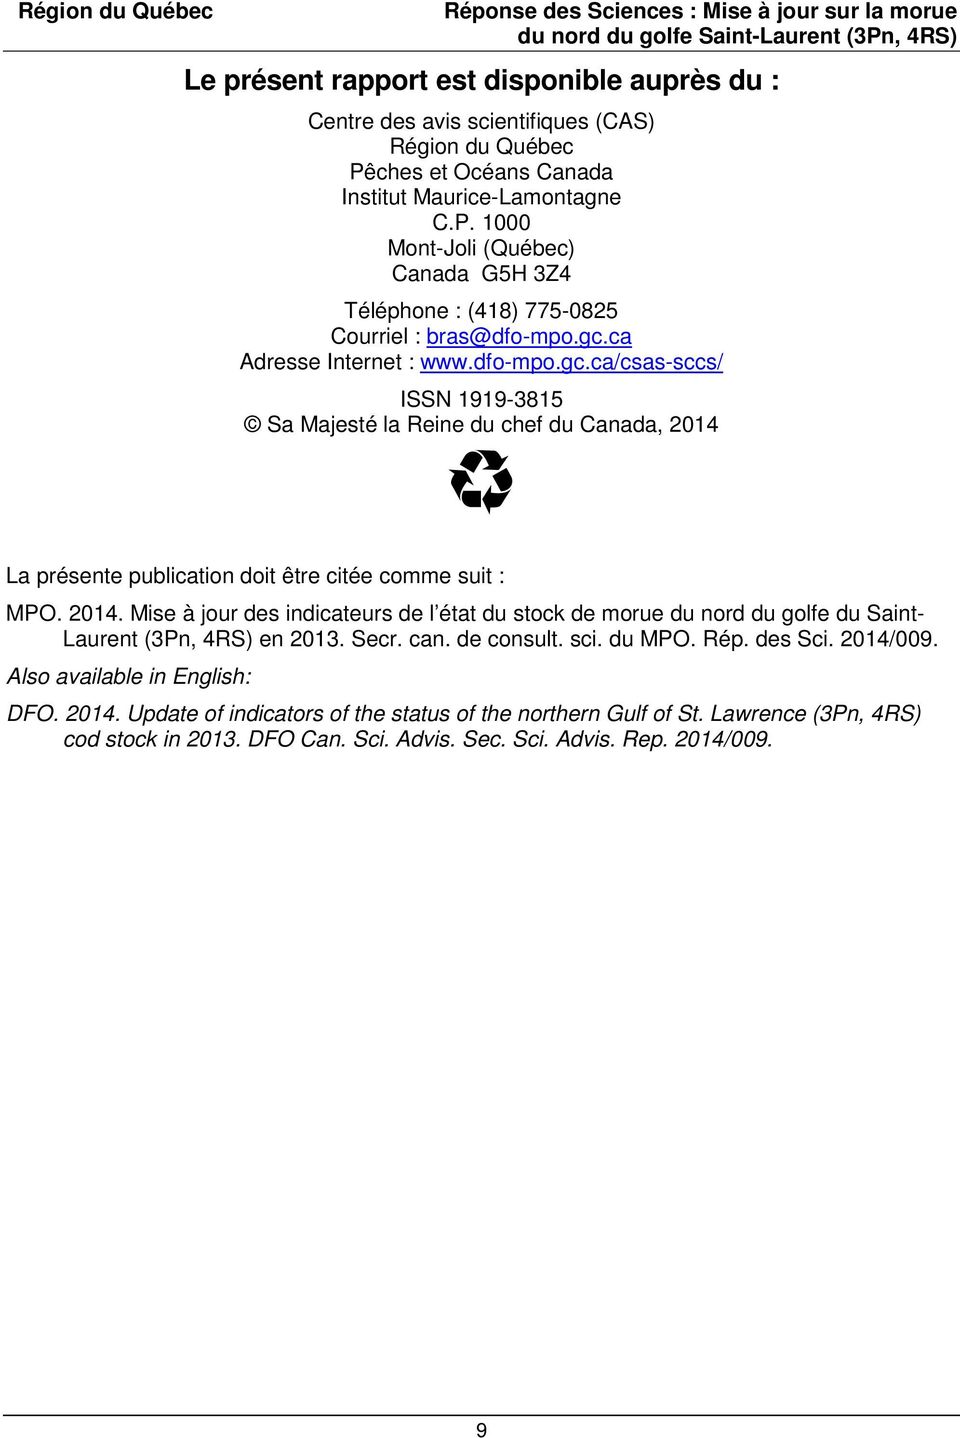 La présente publication doit être citée comme suit : MPO. 2014. Mise à jour des indicateurs de l état du stock de morue du nord du golfe du Saint- Laurent (3Pn, 4RS) en 2013. Secr. can. de consult.